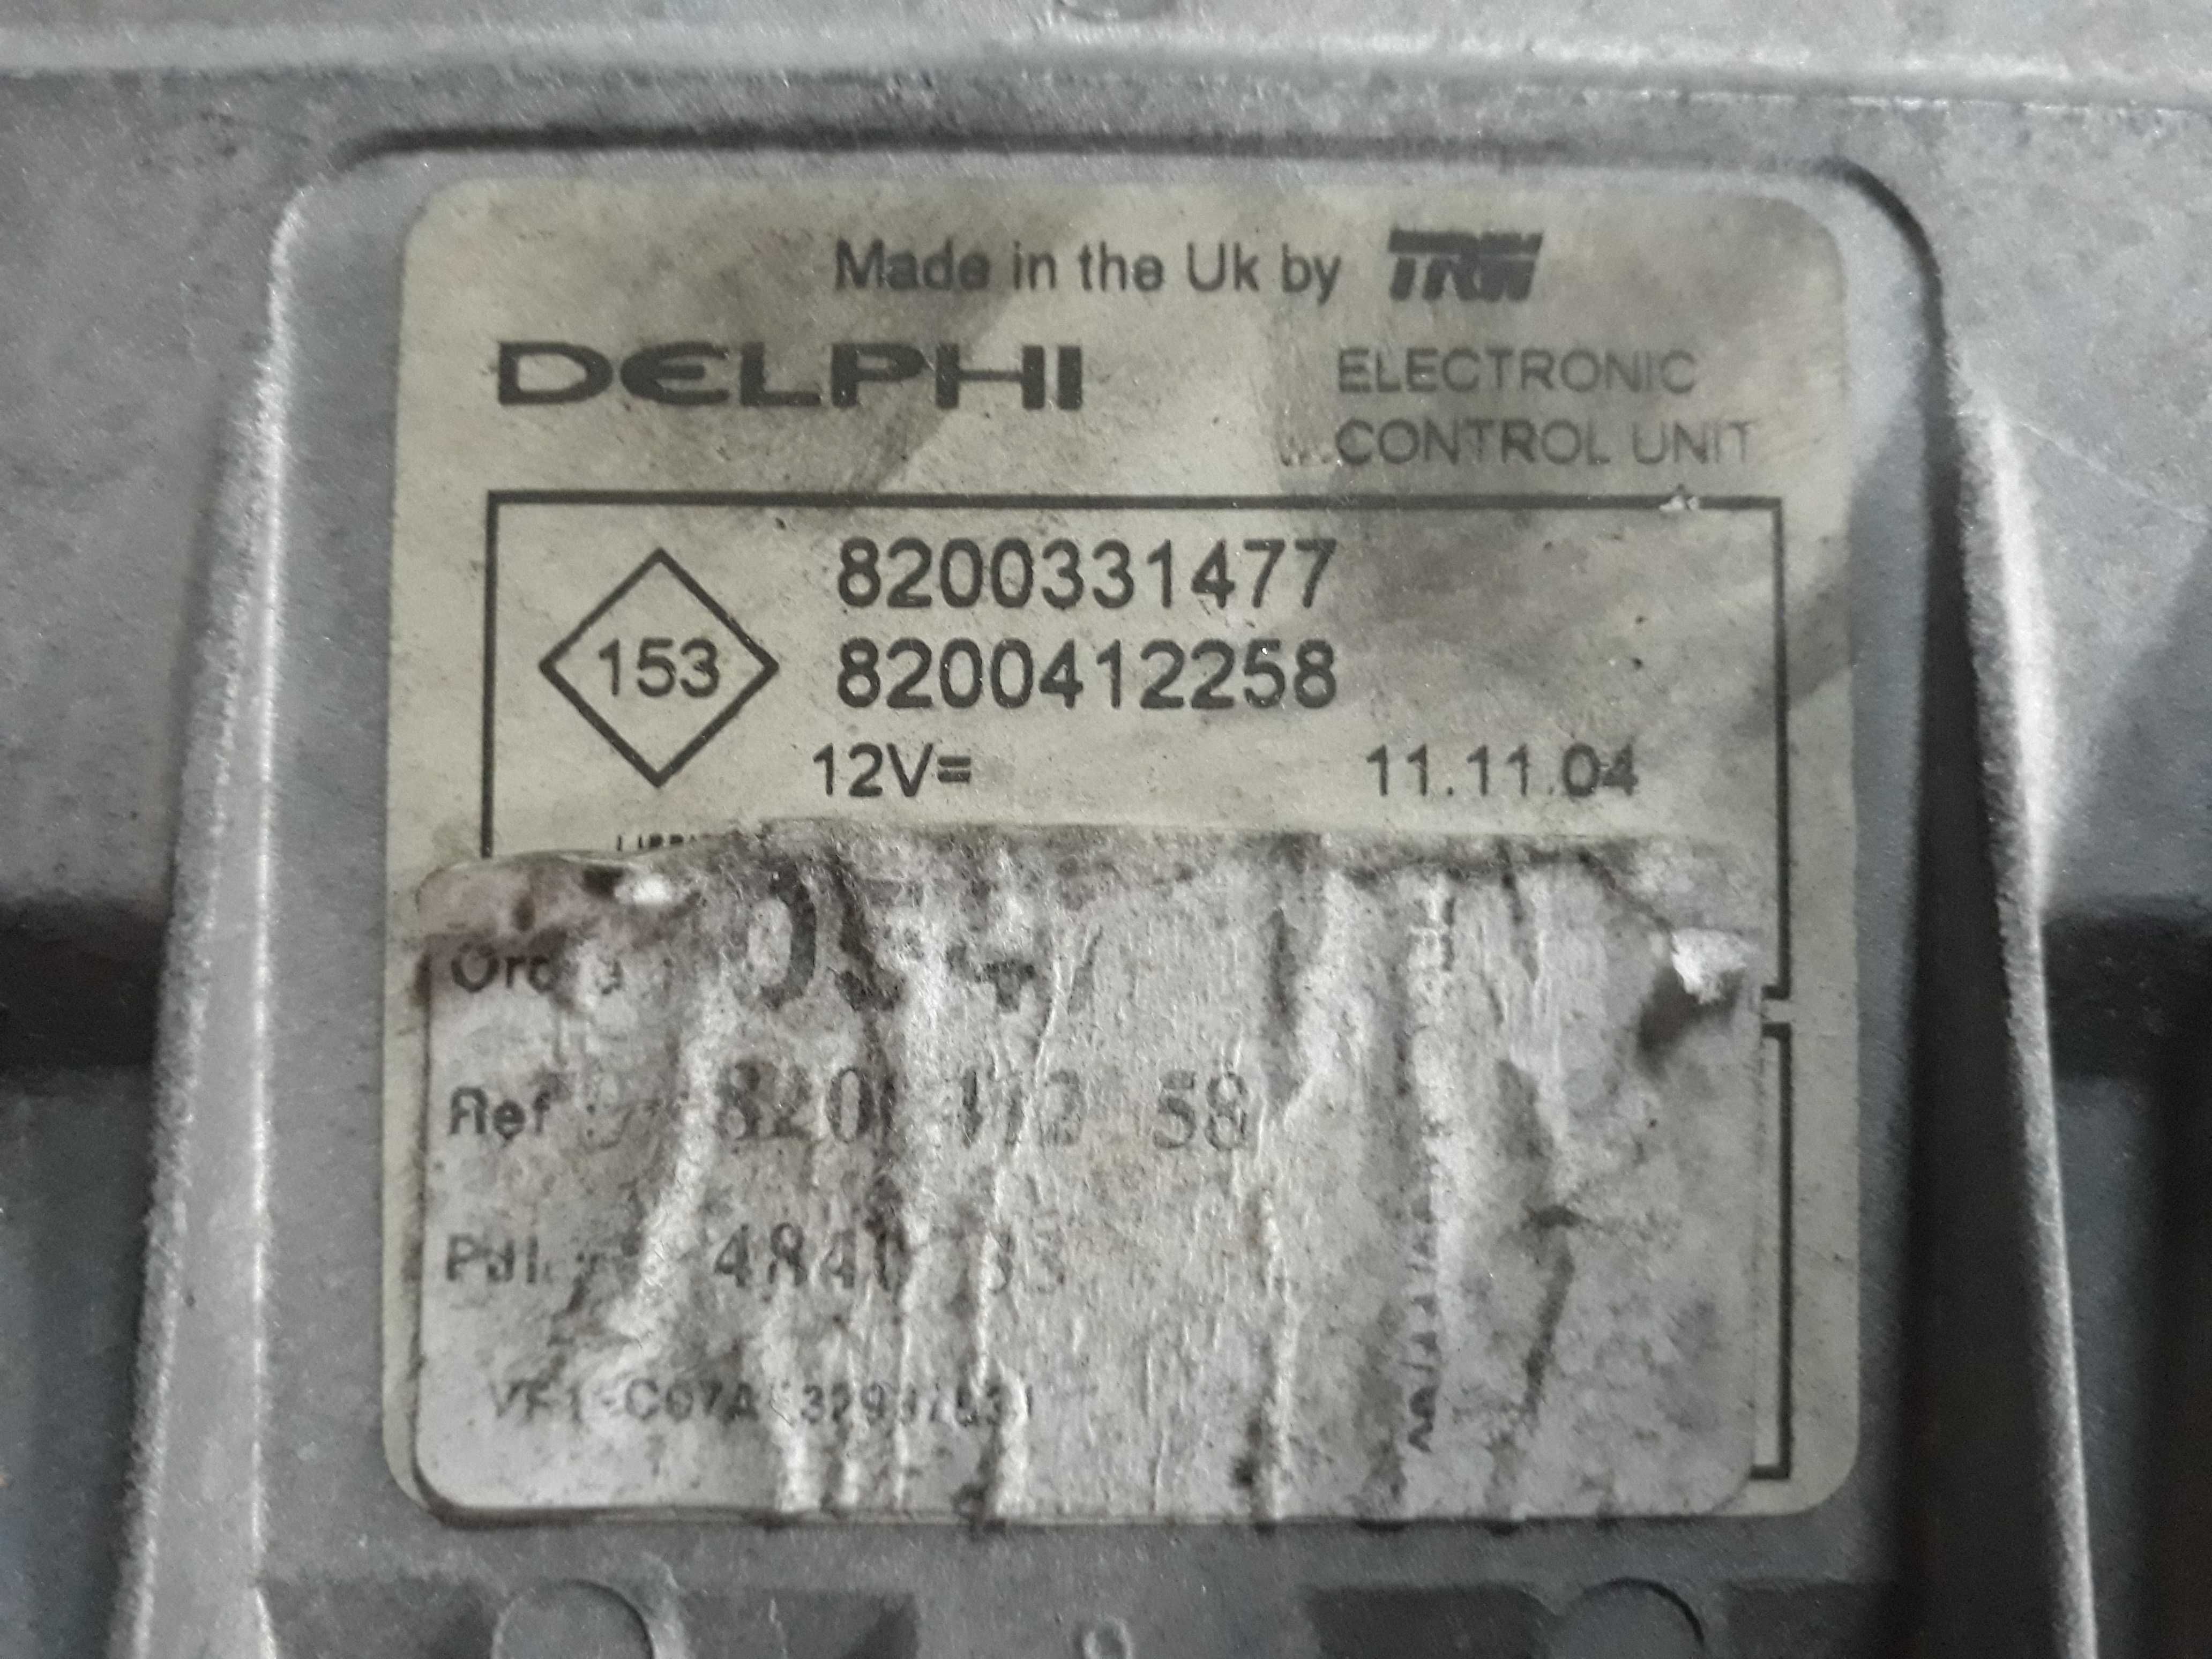 Centralina Motor injeção Renault Delphi TRW 8200_331477 / 8200.412_258